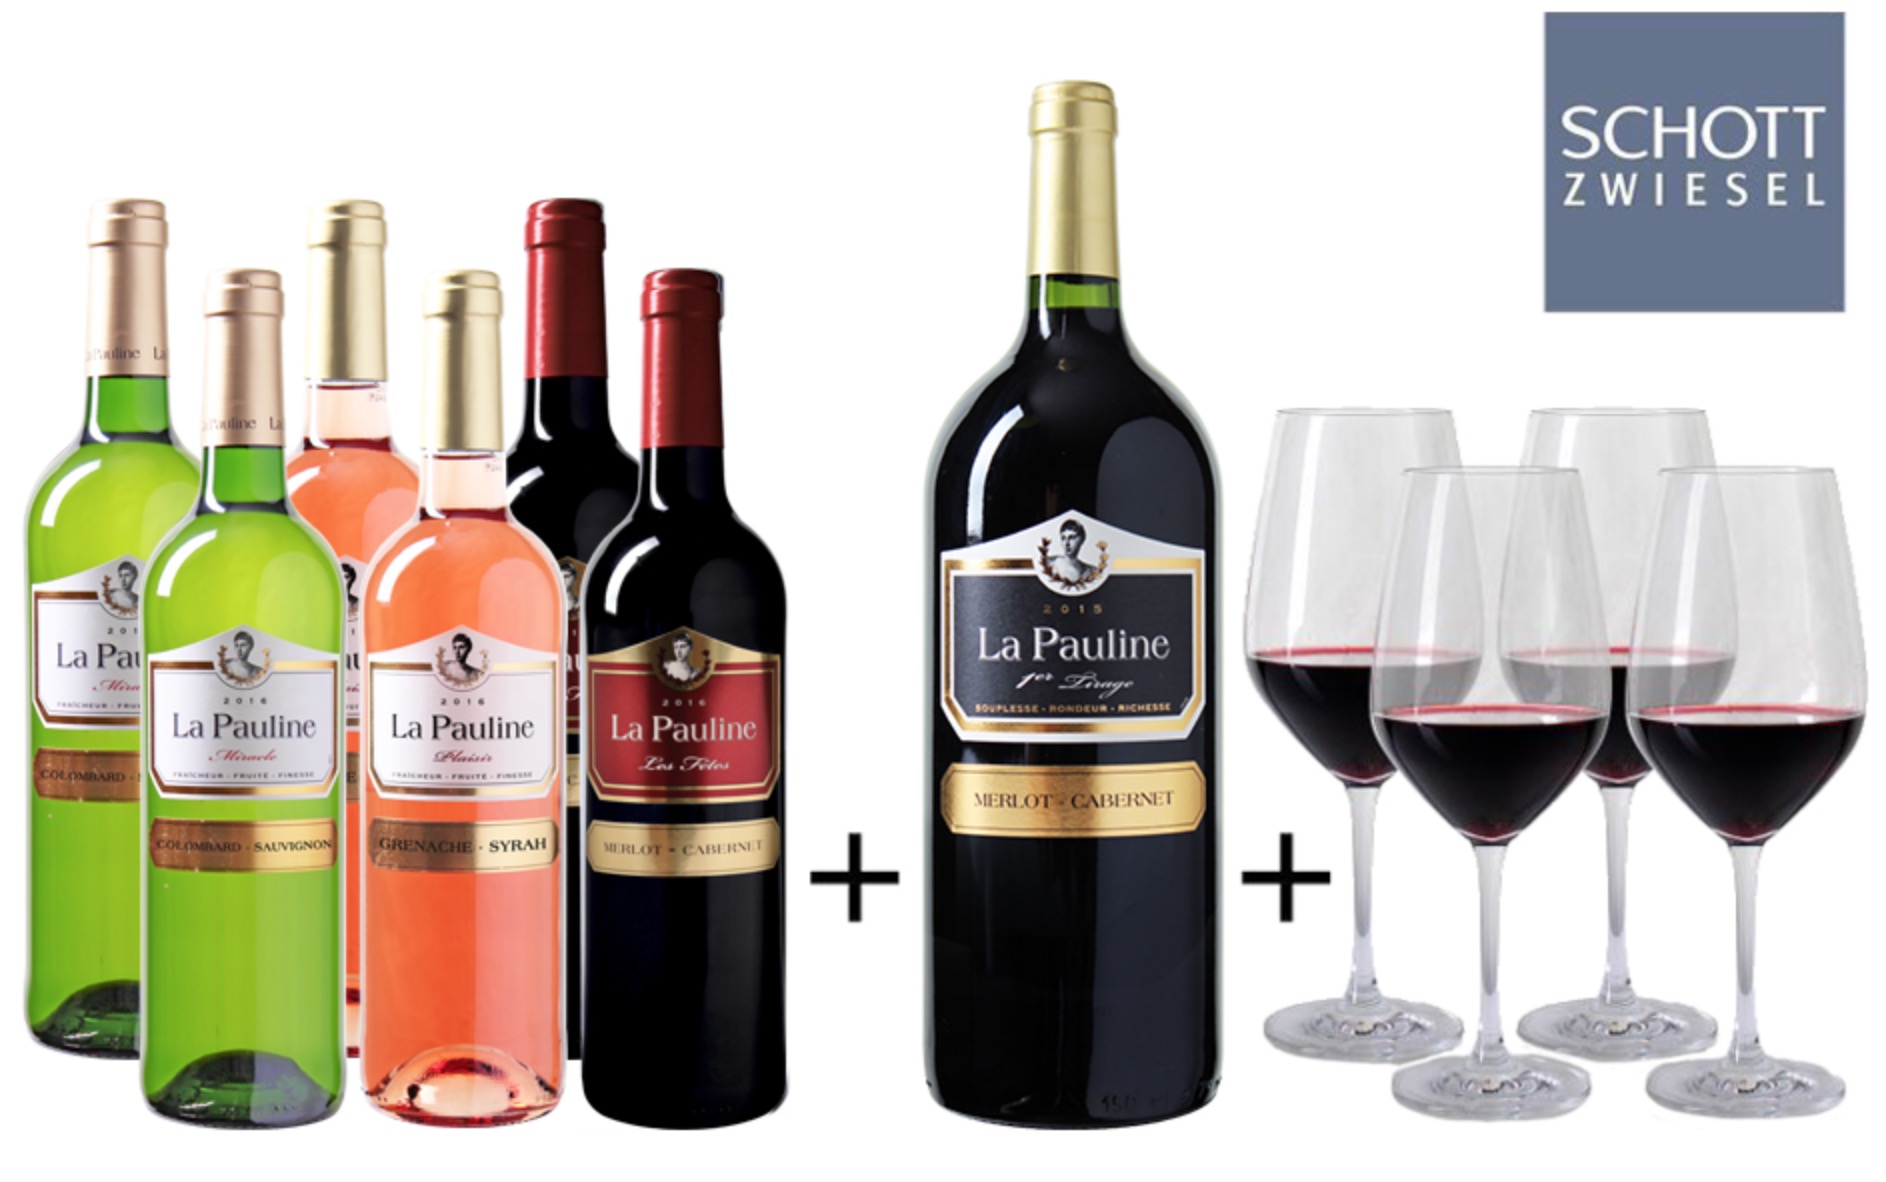 Probierpaket mit 6 Flaschen Wein (Weiß, Rosé und Rot) + Magnumflasche + 4 Weingläser für nur 49,99 Euro inkl. Versand